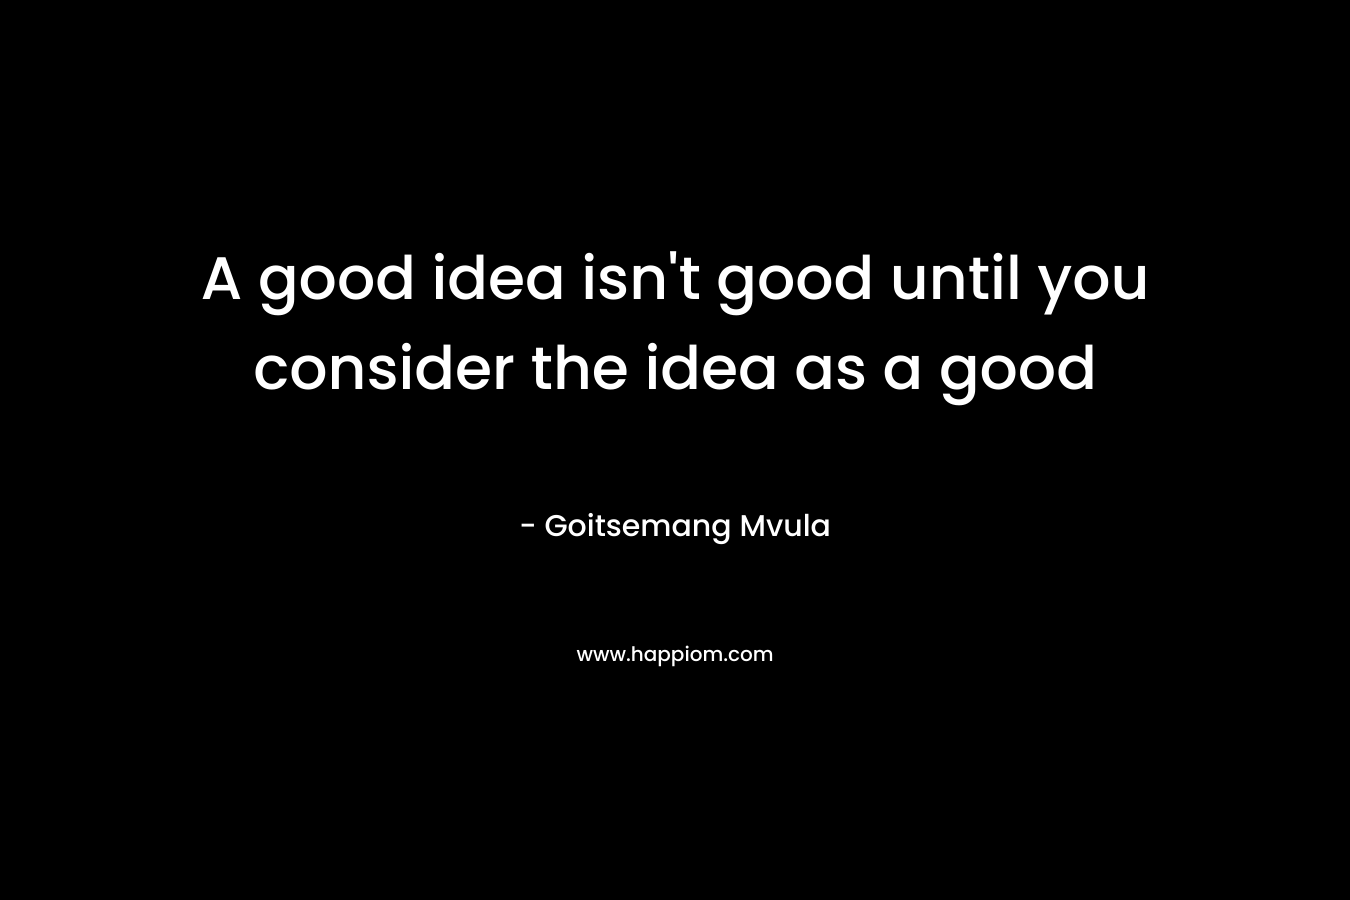 A good idea isn't good until you consider the idea as a good